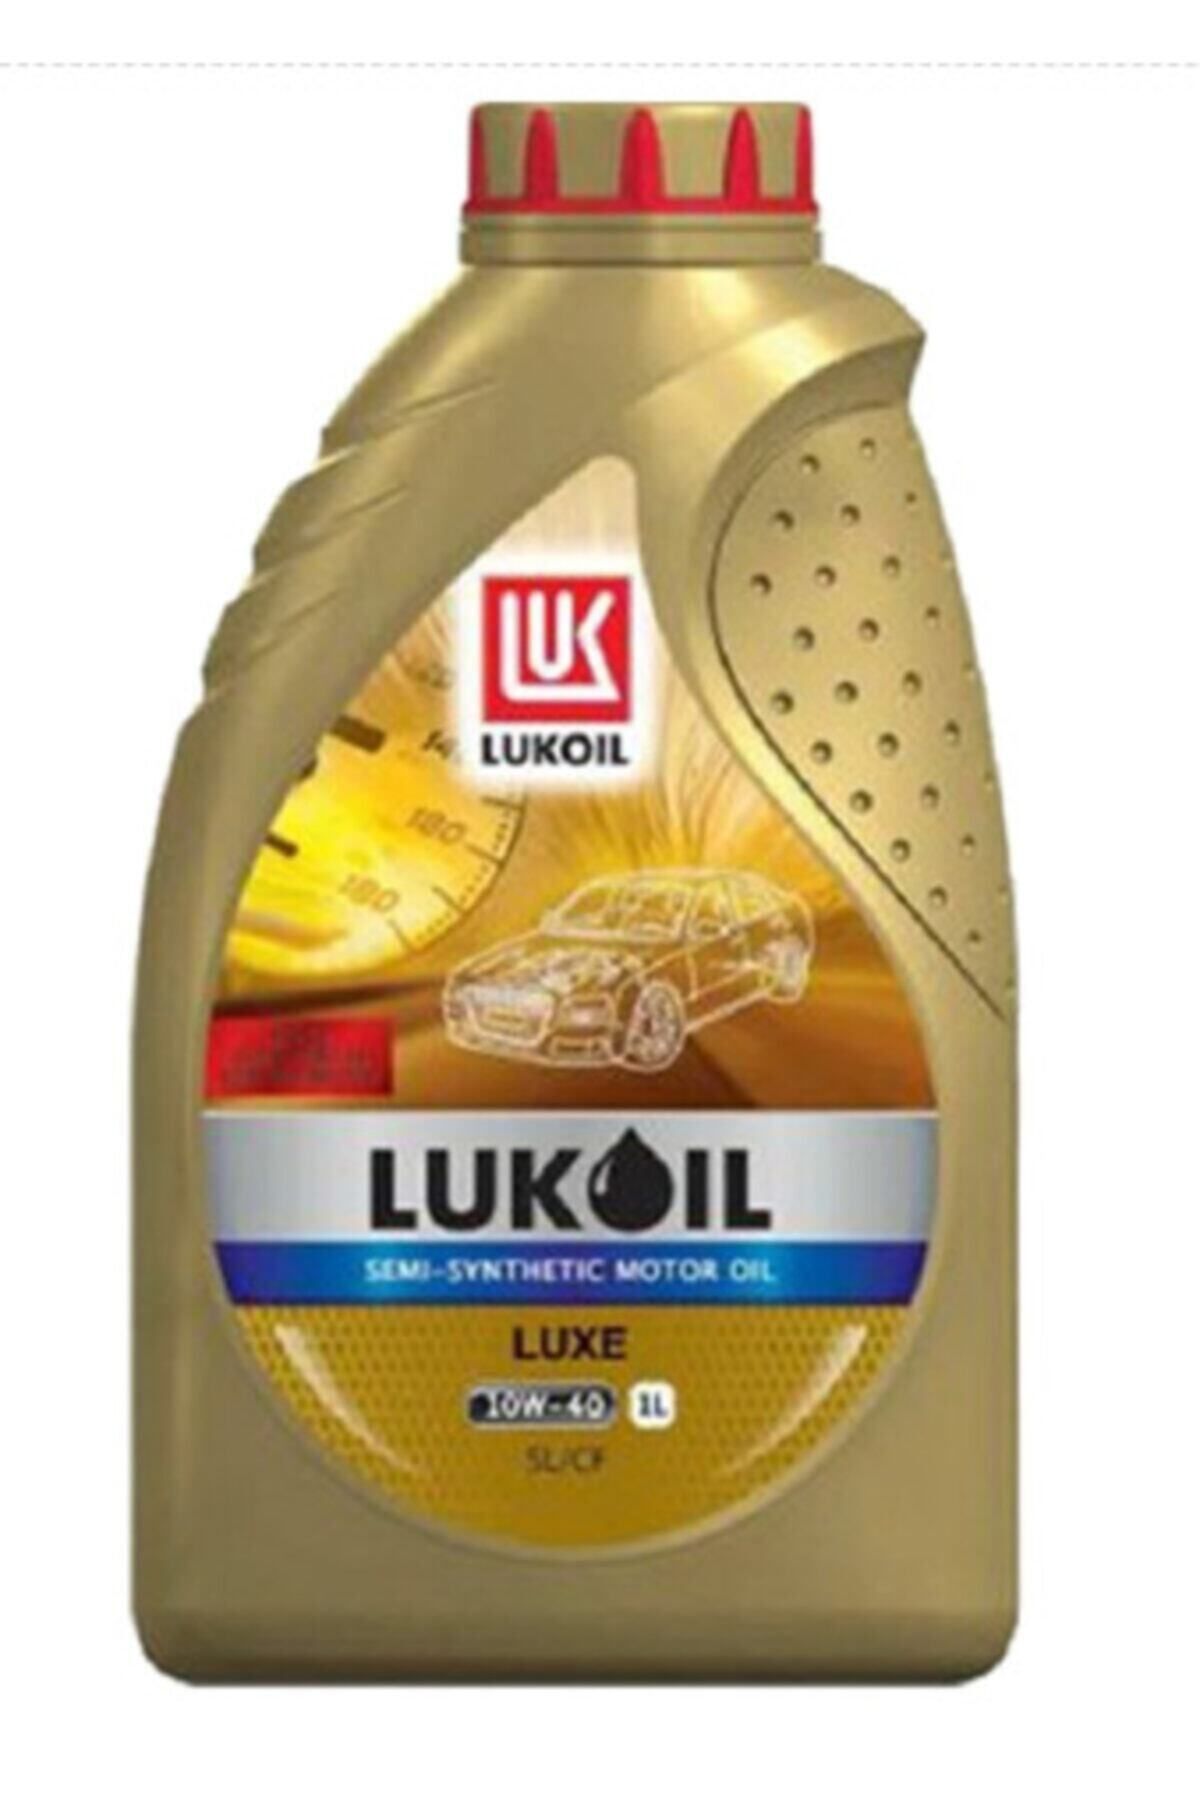 LUKOIL Lux 10w-40 1 Lt.